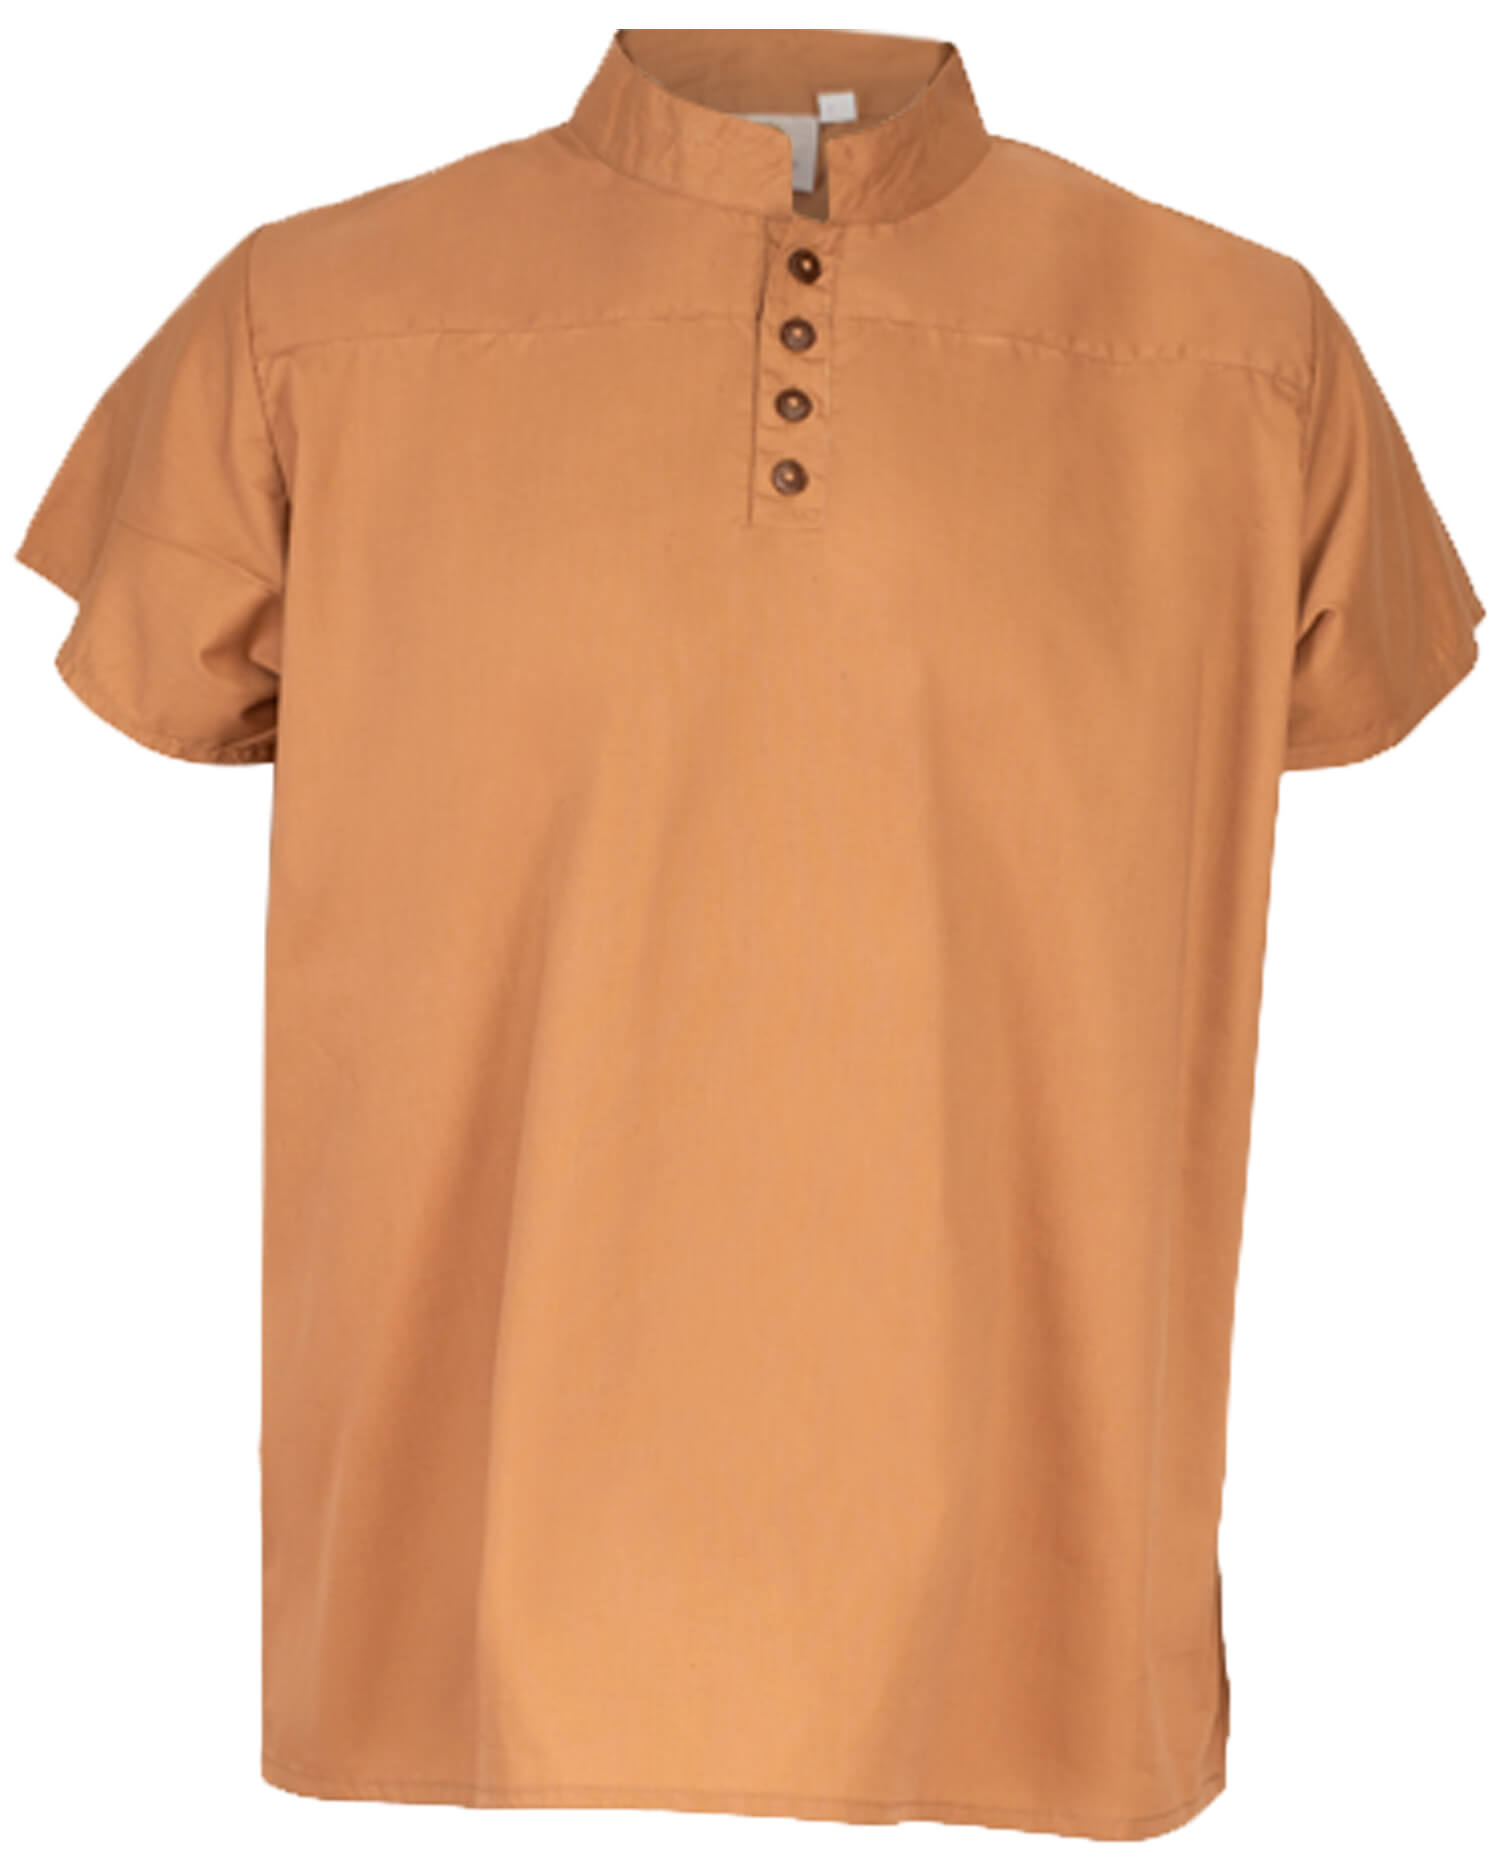 Bartold Hemd kurzarm leichte Baumwolle sand XL